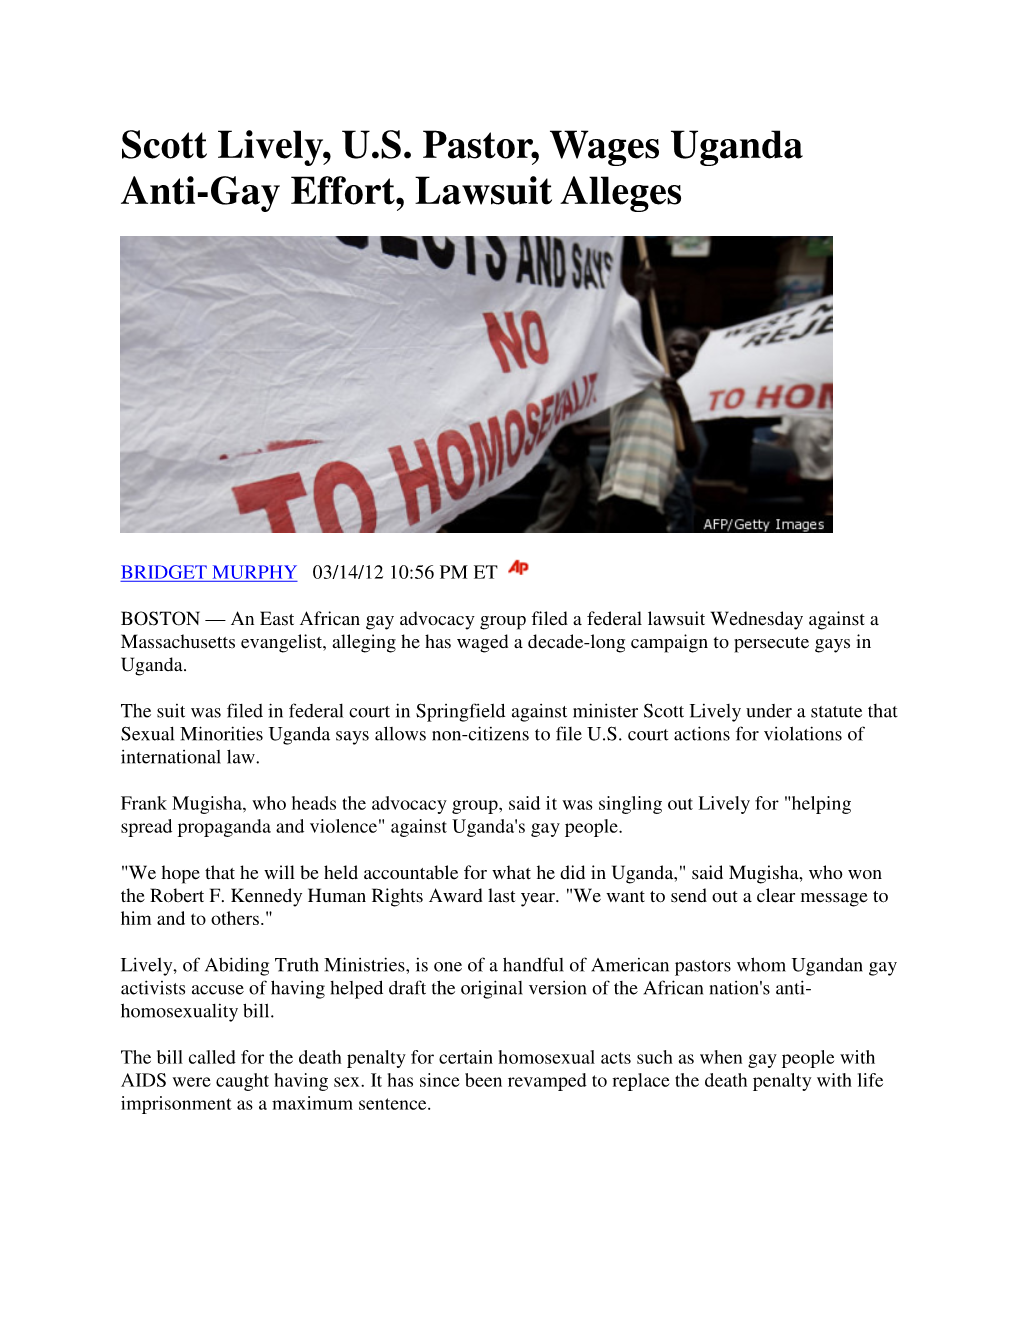 Scott Lively, U.S. Pastor, Wages Uganda Anti-Gay Effort, Lawsuit Alleges